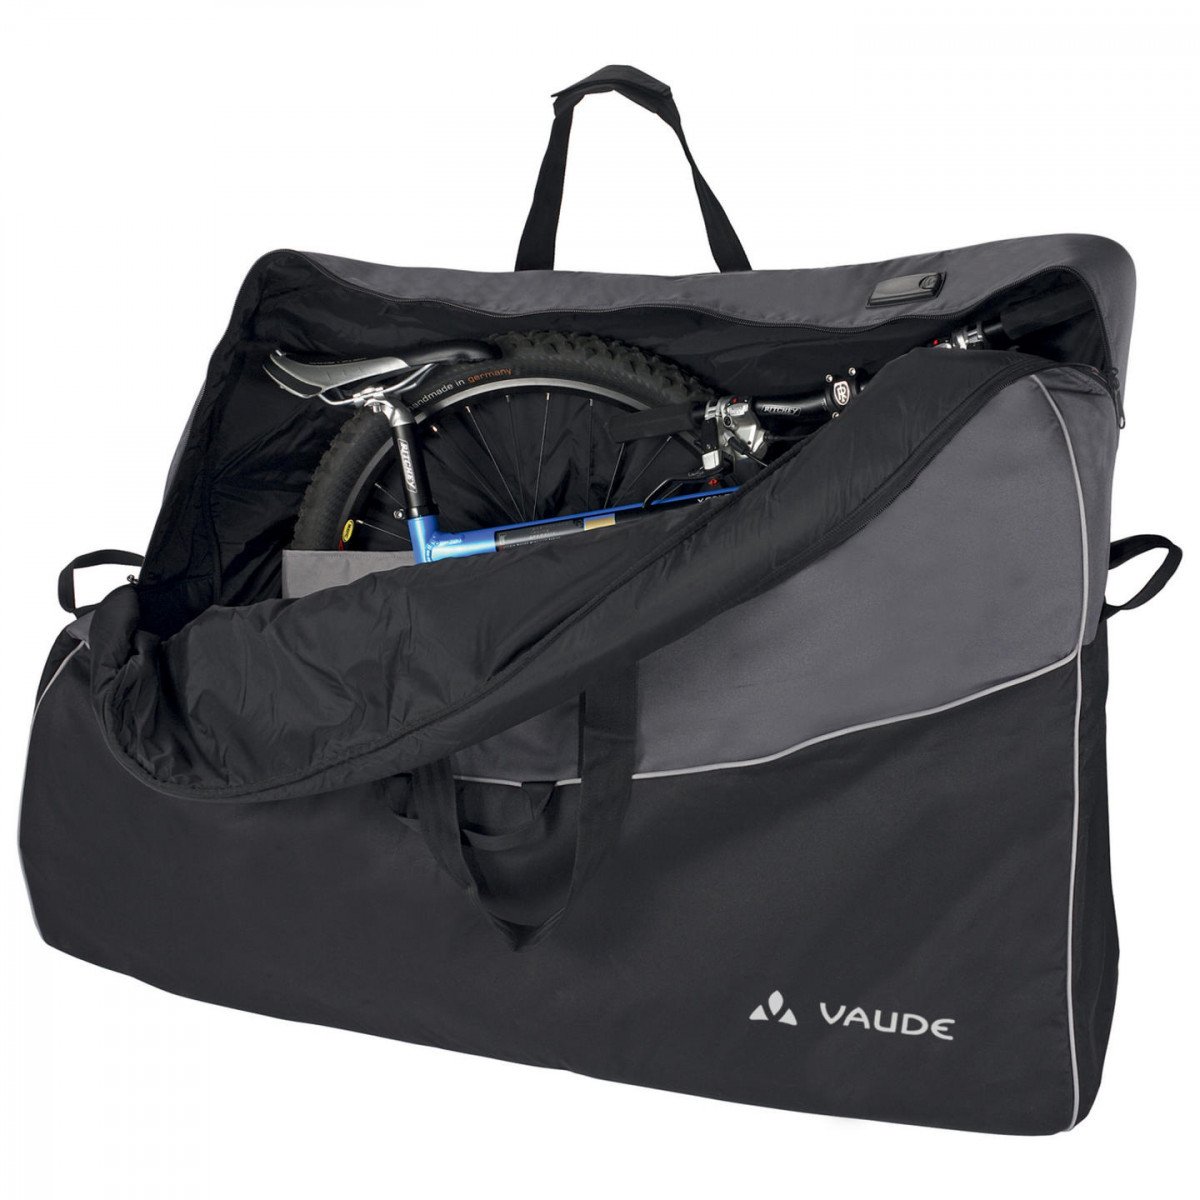 Велосипедная сумка VAUDE Big Bike Bag Pro сумка транспортировочная, размеры: 85x130x28см, 15257 досье на ковид бой с вирусом который постоянно меняет свои размеры форму и свойства